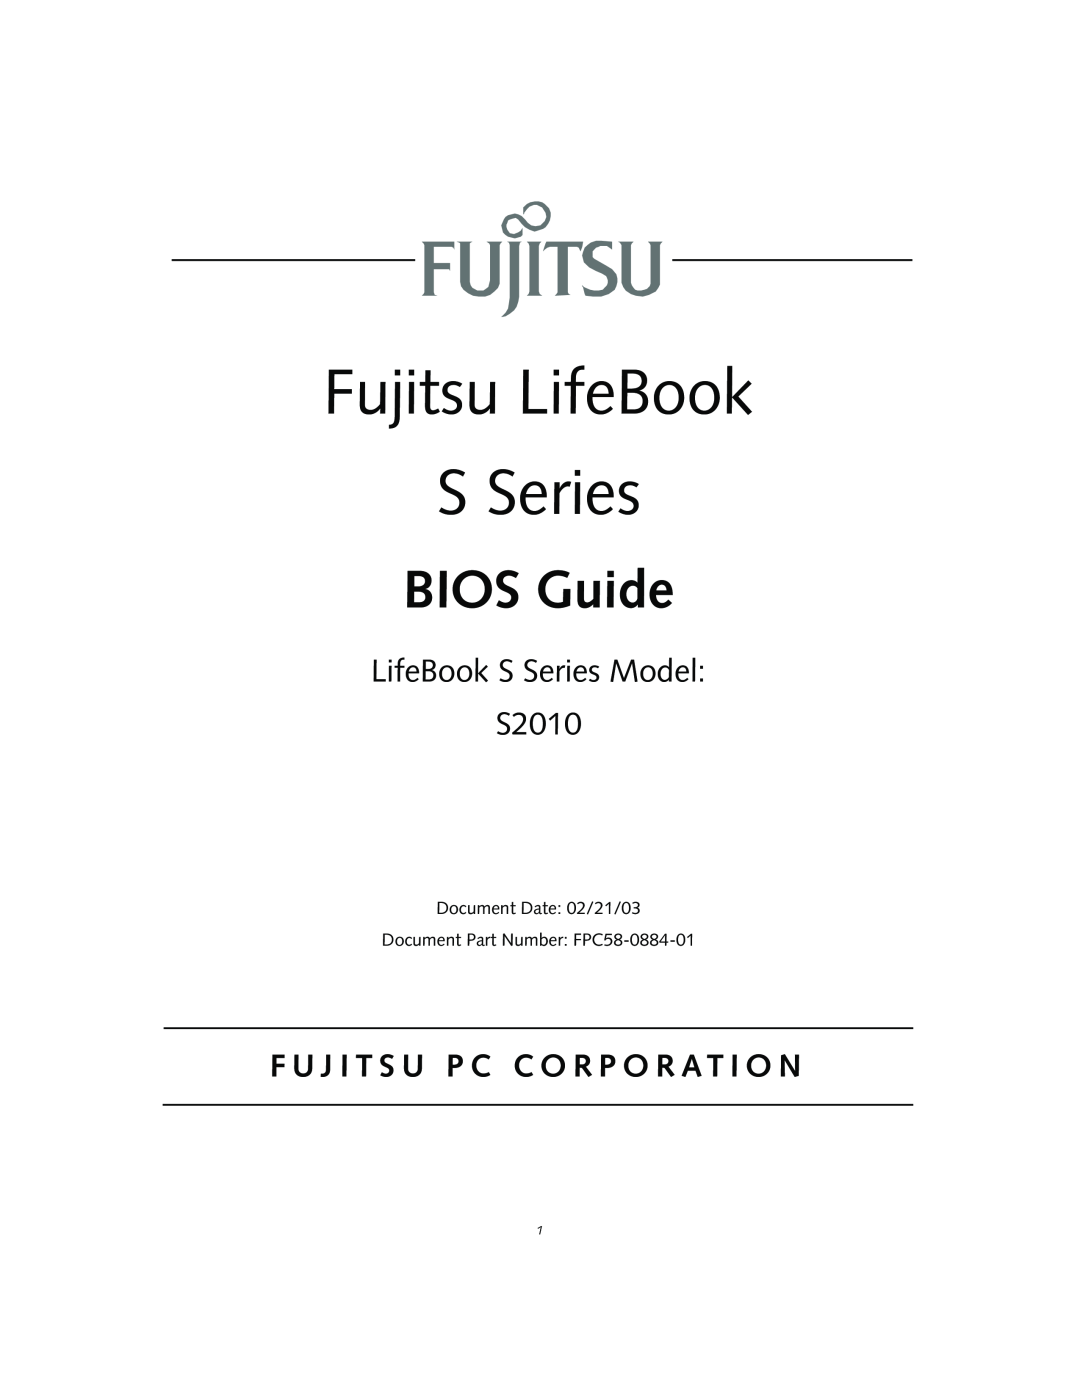 Fujitsu S2010 manual F U J I T S U P C C O R P O R A T I O N, Fujitsu LifeBook S Series, BIOS Guide 